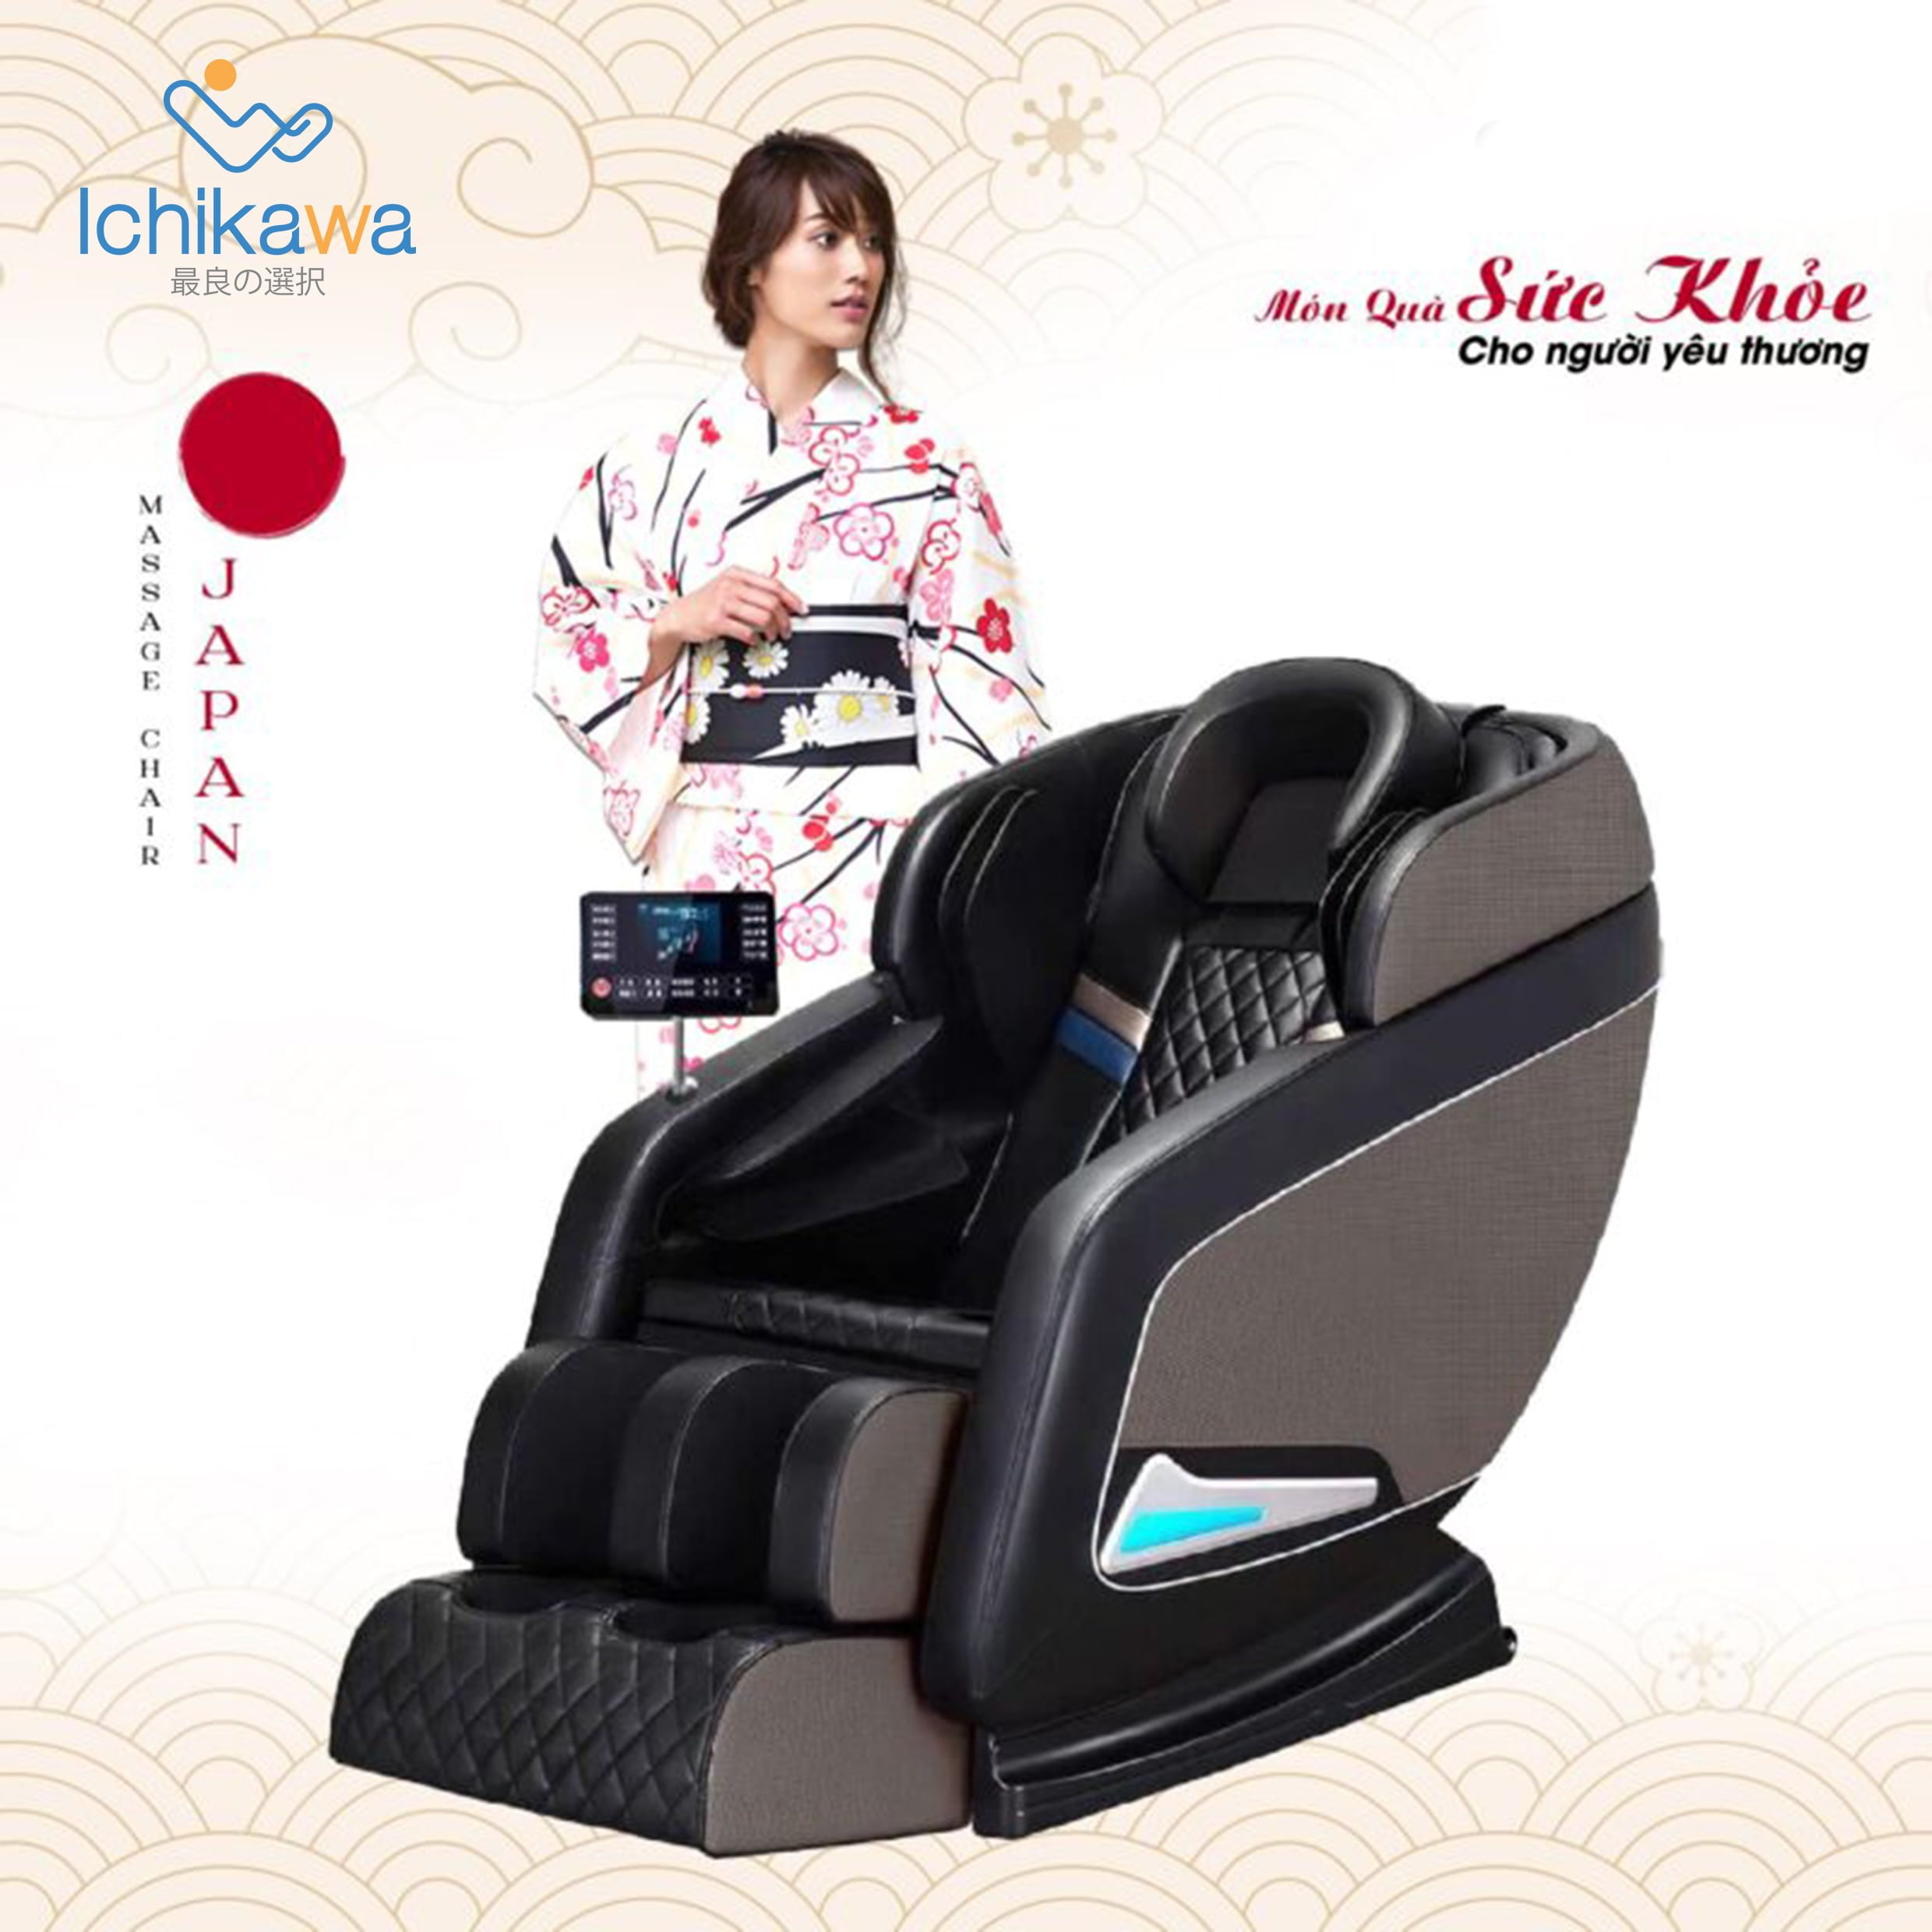 Ghế massage JAPAN ICHIKAWA R8